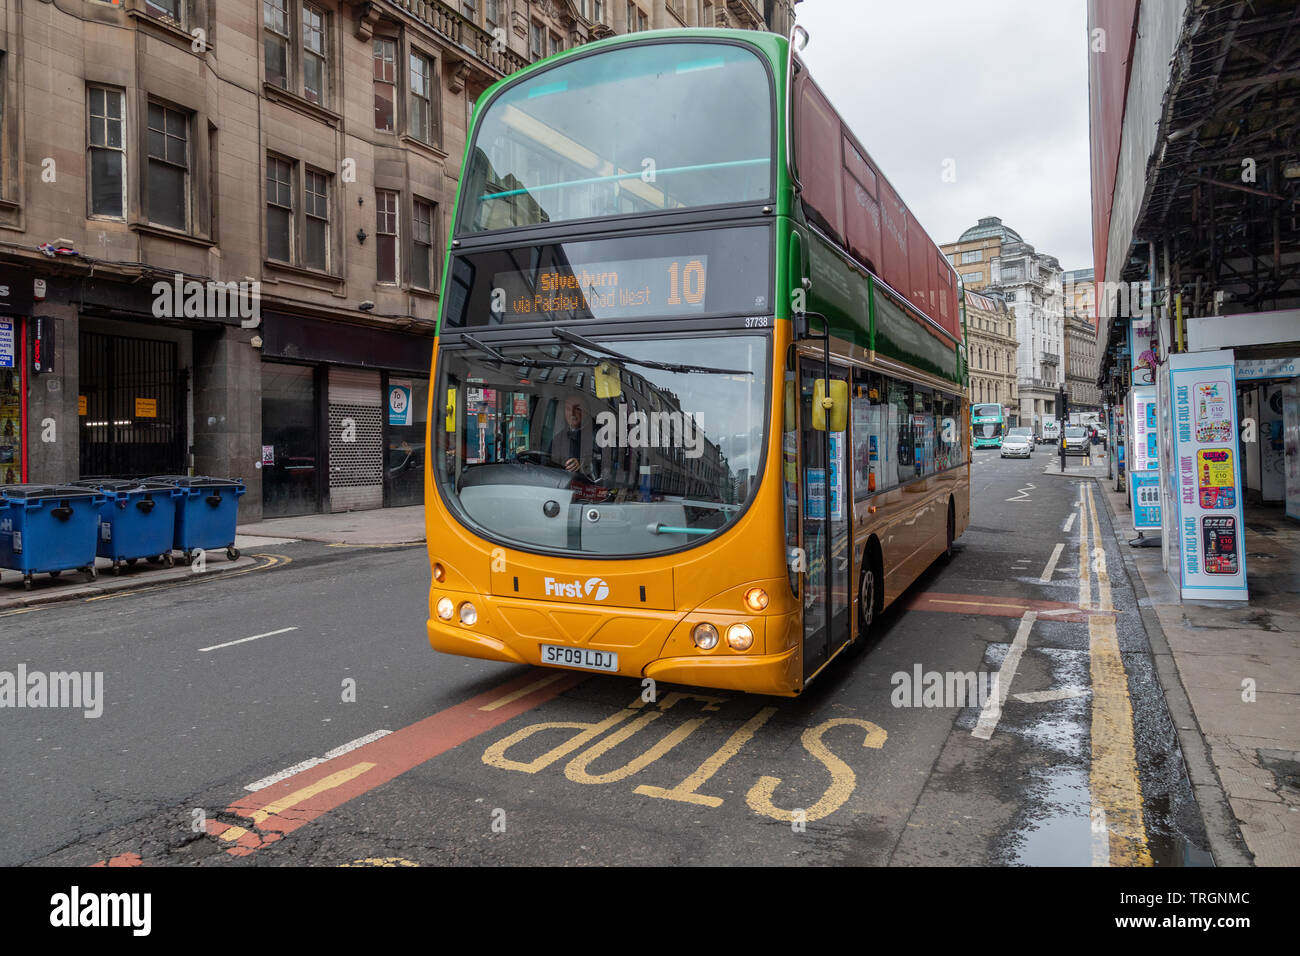 Pour célébrer 125 ans de transports publics à Glasgow Premier bus ont peint une Volvo B9TL bus dans la société Glasgow rétro aux couleurs orange et verte Banque D'Images